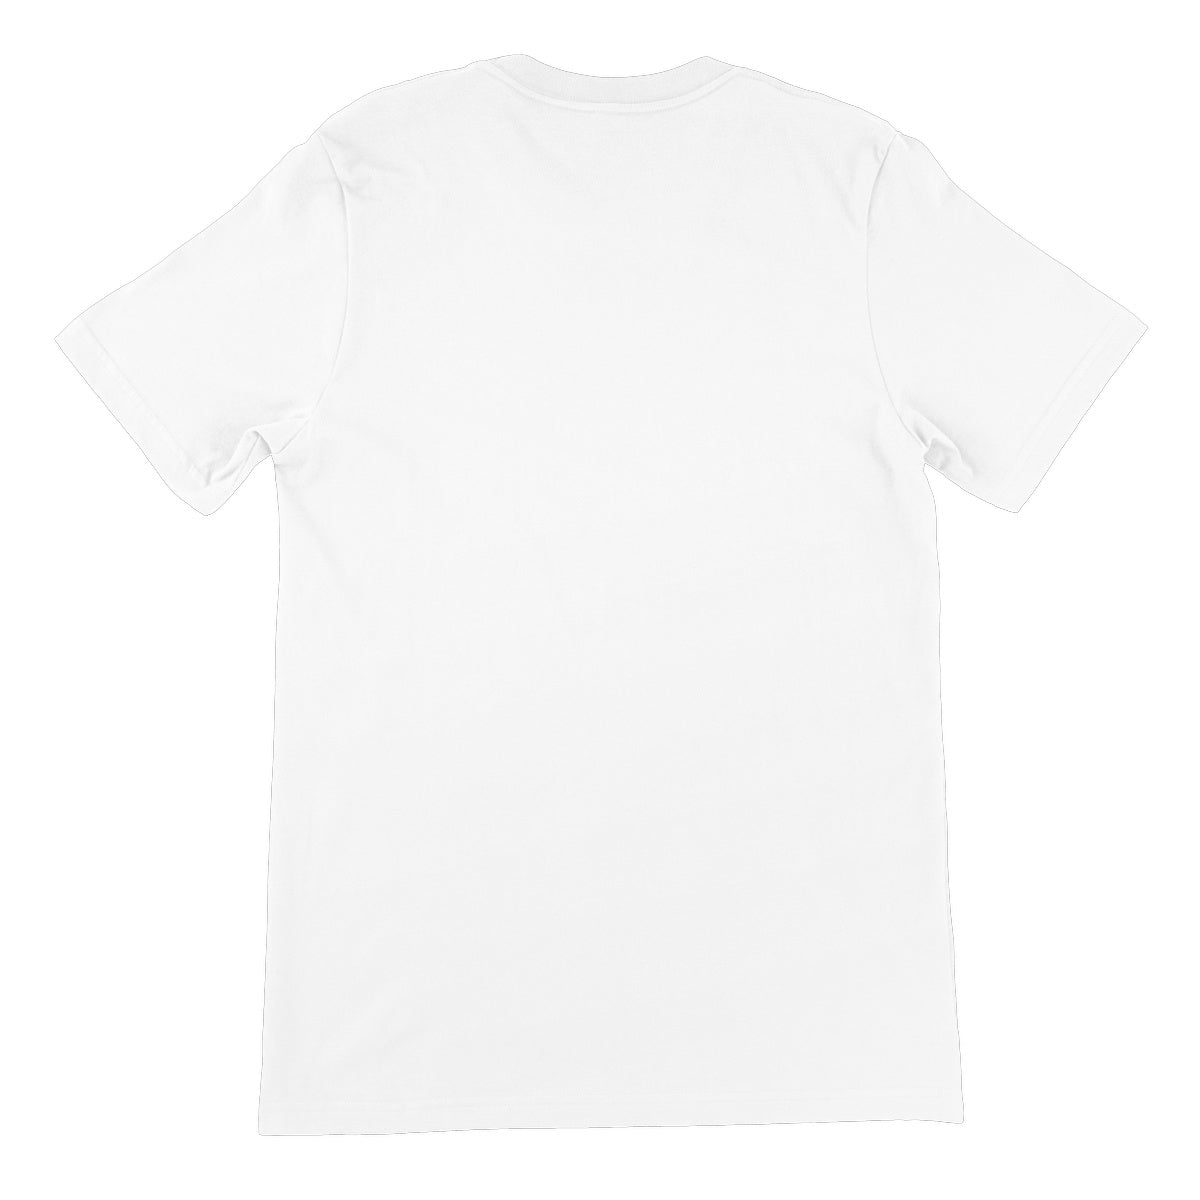 AQUA B&W - 01 -Big Fish - Unisex Fine Jersey T-Shirt